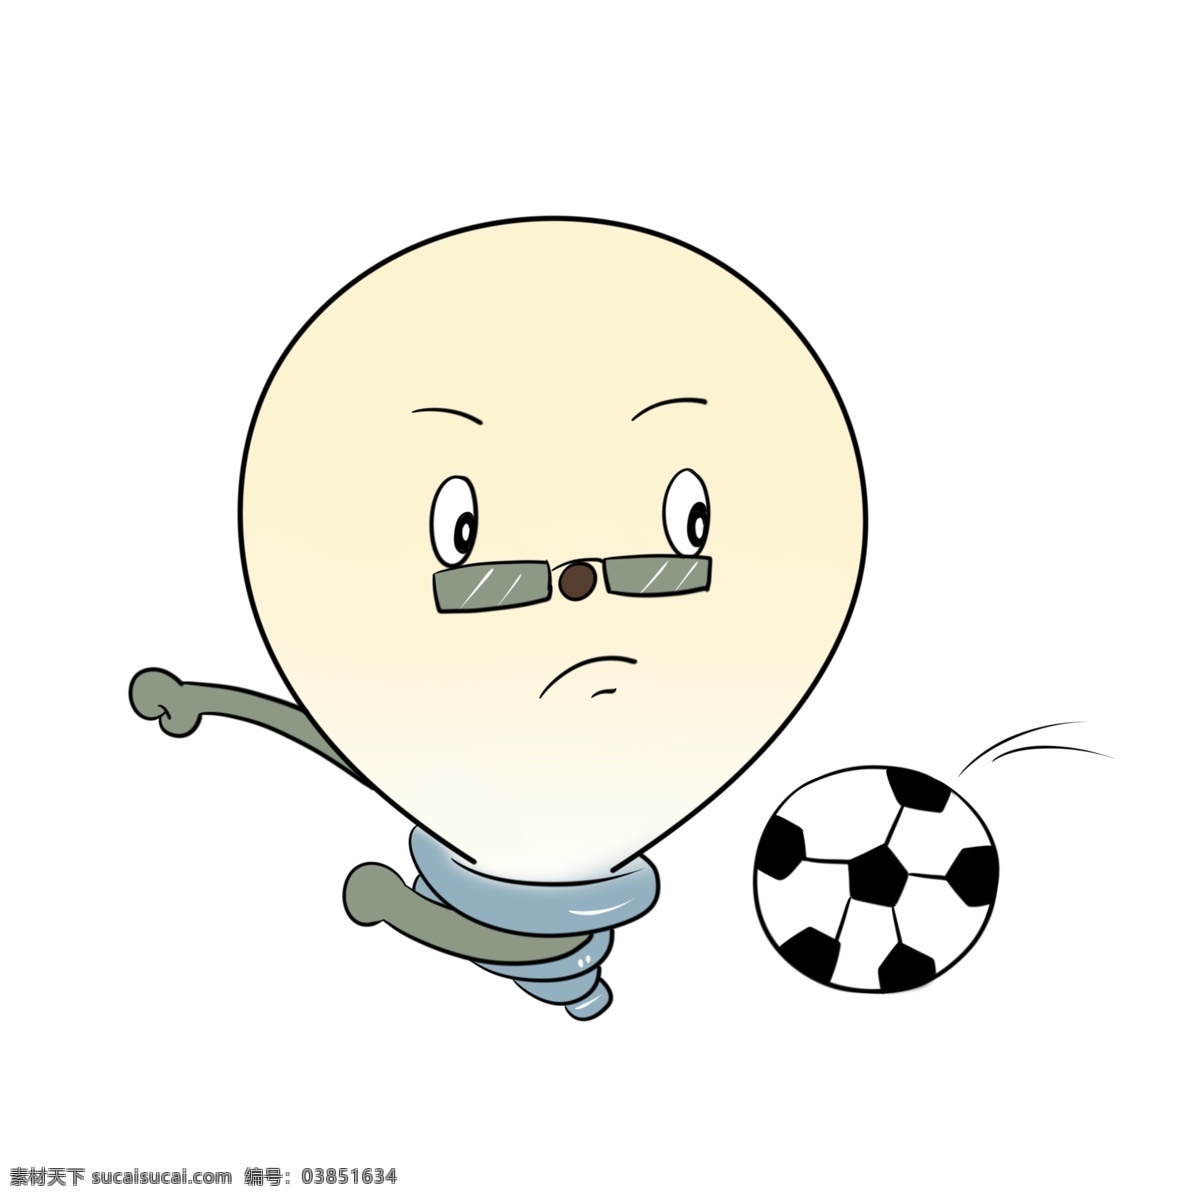 踢 足球 体育运动 插图 足球运动 白色足球 卡通人物 踢足球运动 体育项目 球类